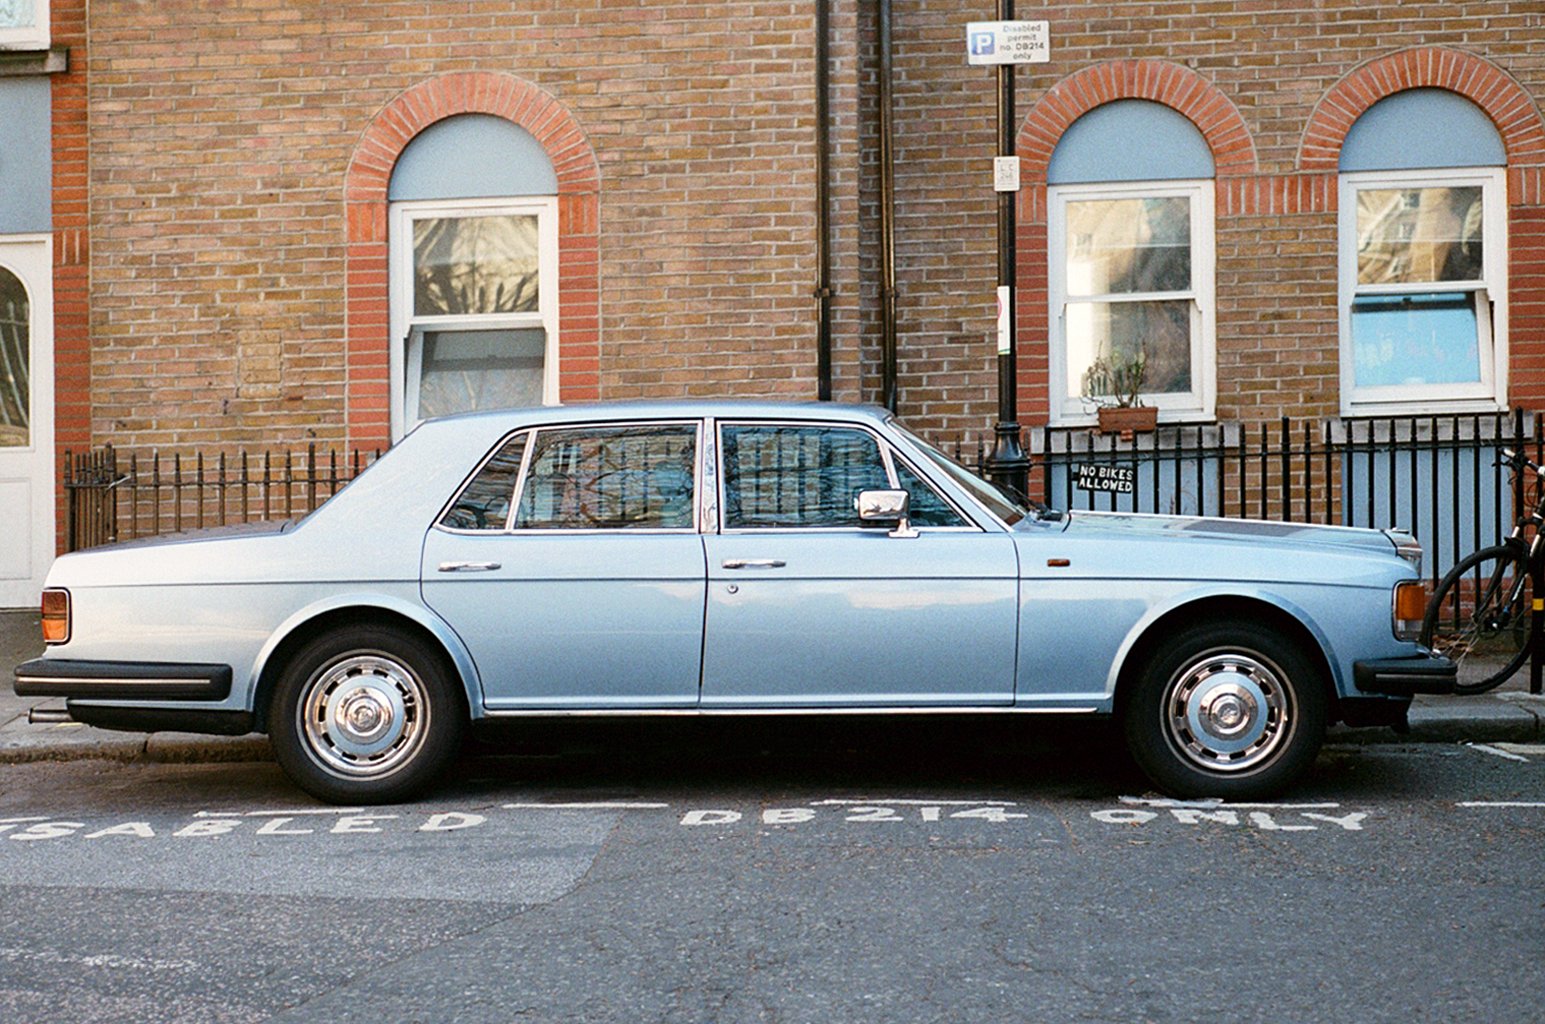  Light Blue Rolls Royce in London - UK 